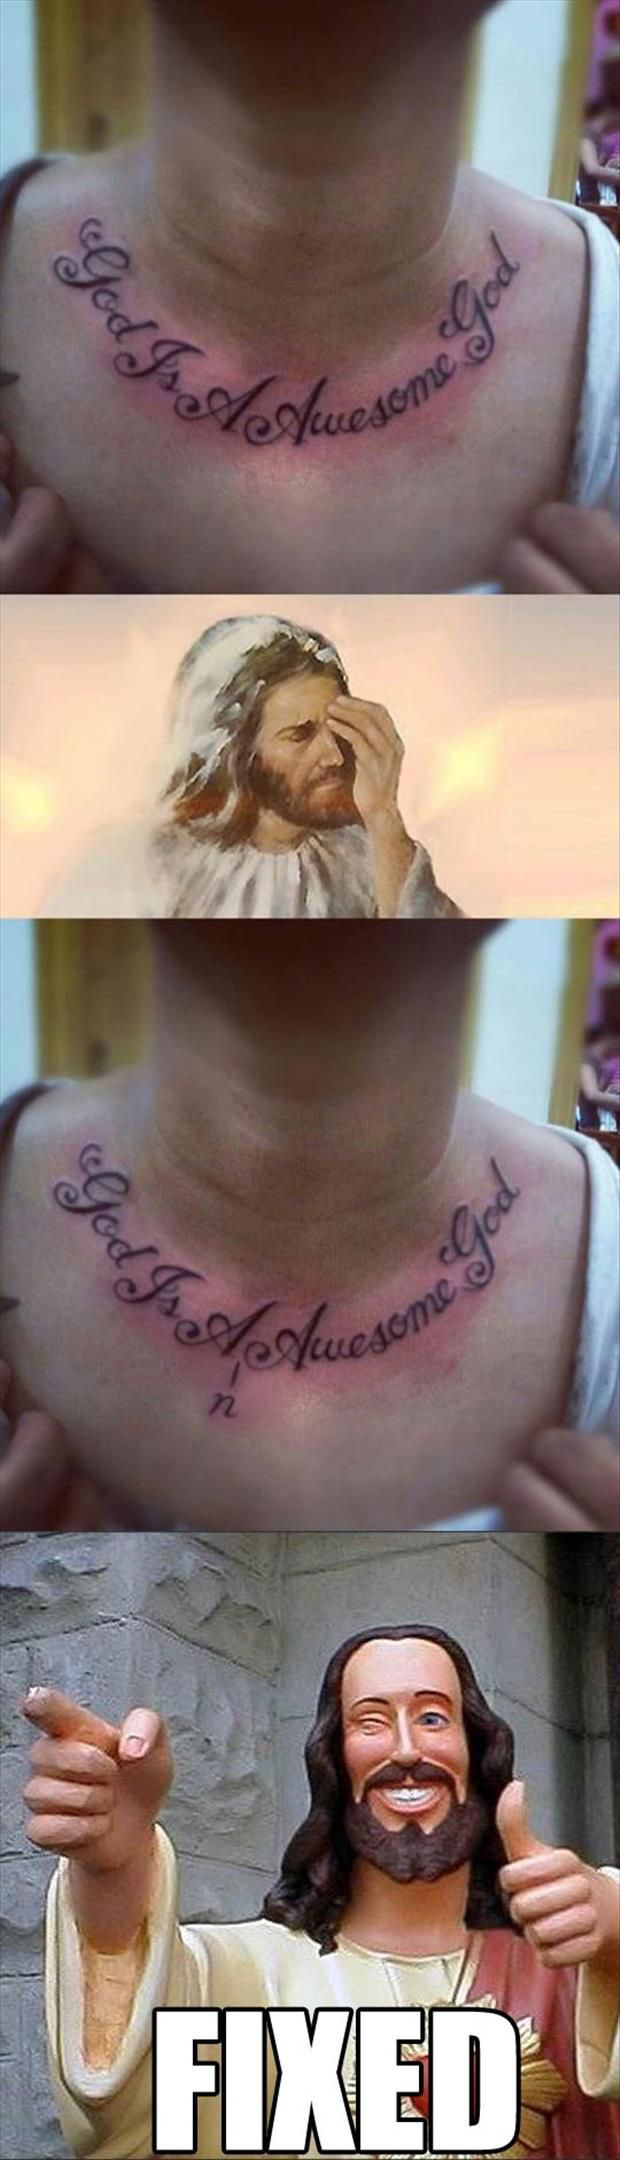 god-tattoo-fail